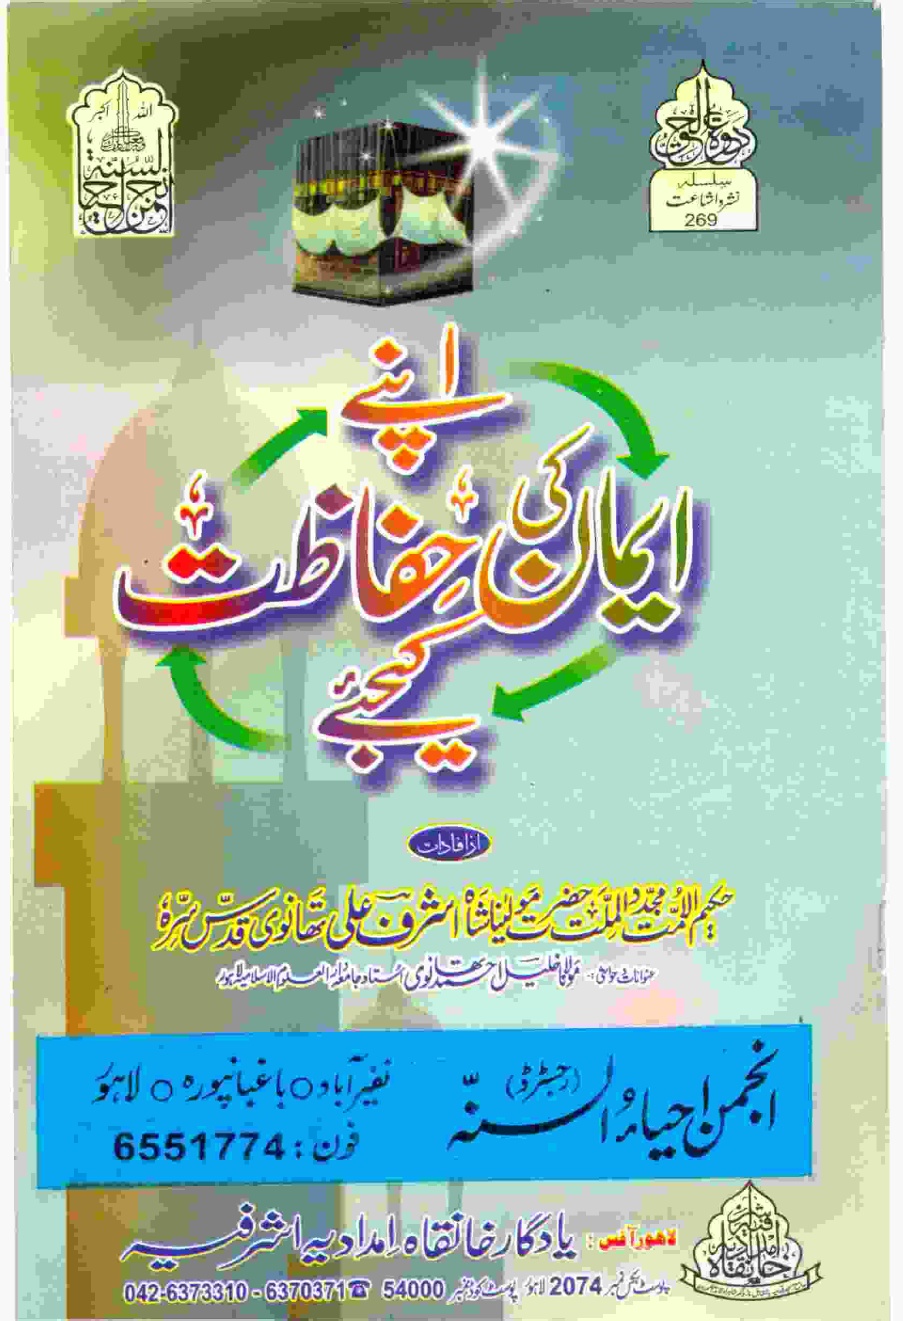 Apne Eman Ke Hefazat Kejye by Hakeem Ul Ummat Maulana Muhammad Ashraf Ali Thanvi and Maulana Khalil Ahmed Thanvi